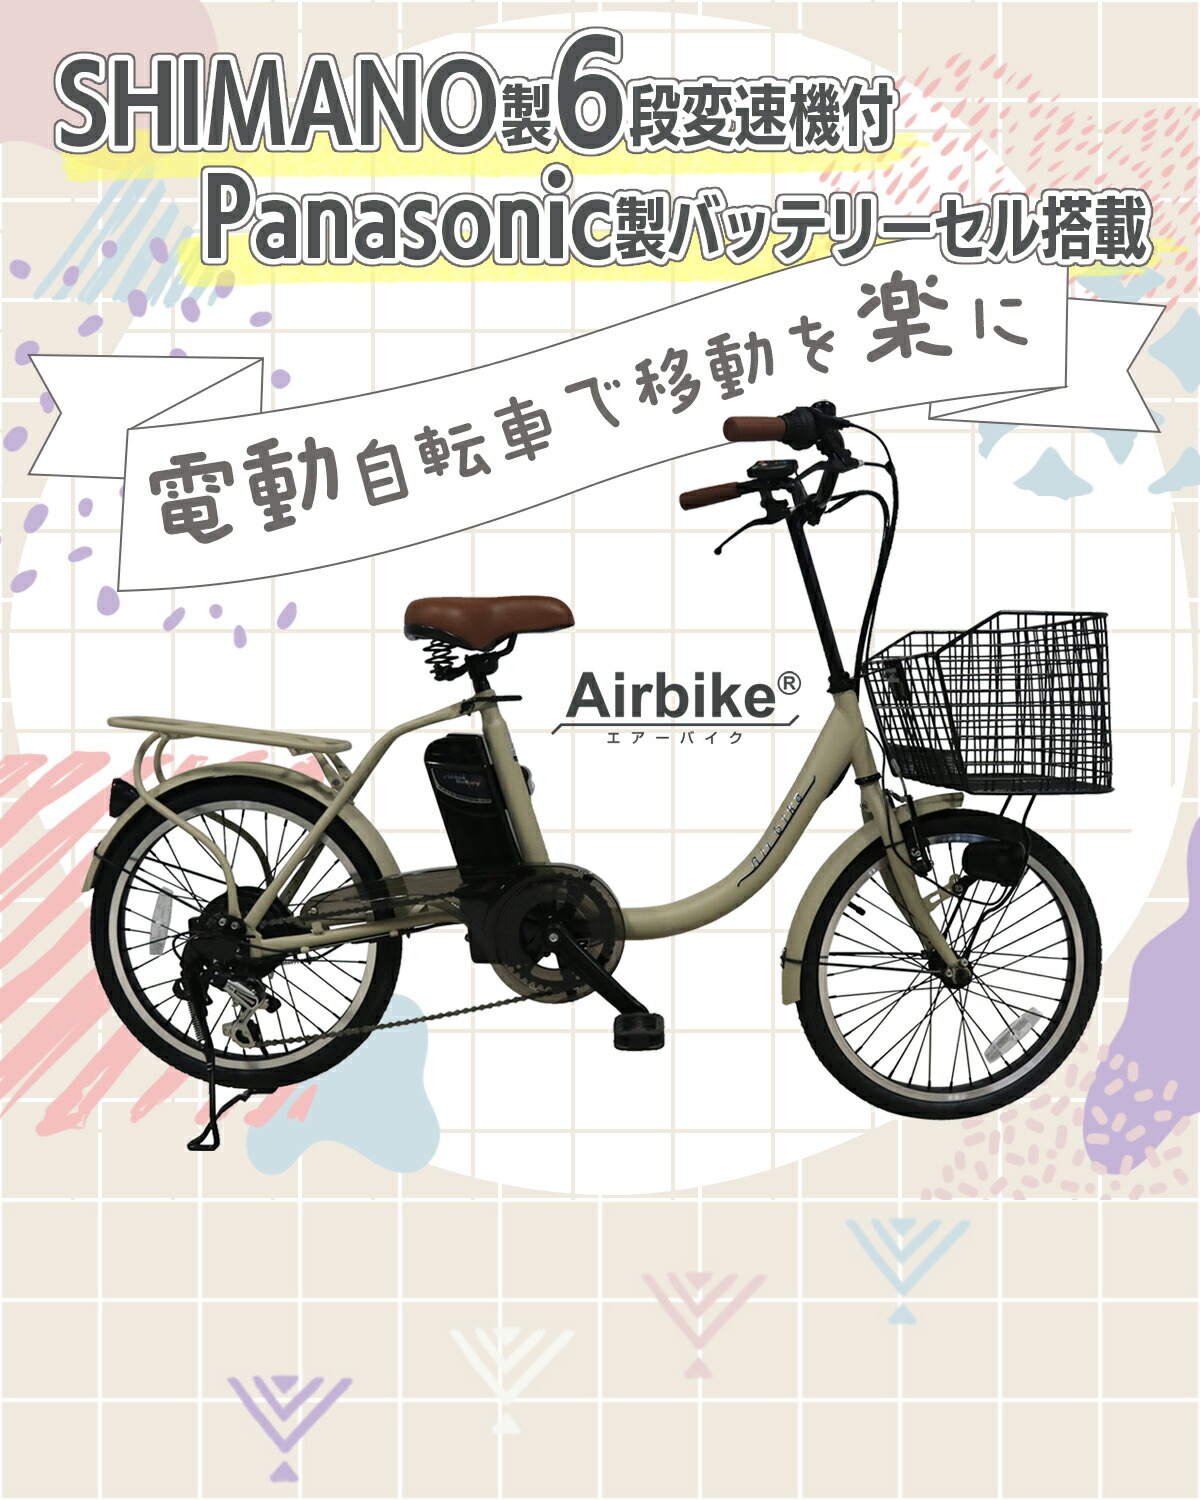 【今だけ先着30台特別価格】電動自転車 パナソニック Panasonic バッテリーセル搭載 20インチ 型式認定 Airbike  bicycle-212assist 電動アシスト自転車-Santasan-本店-